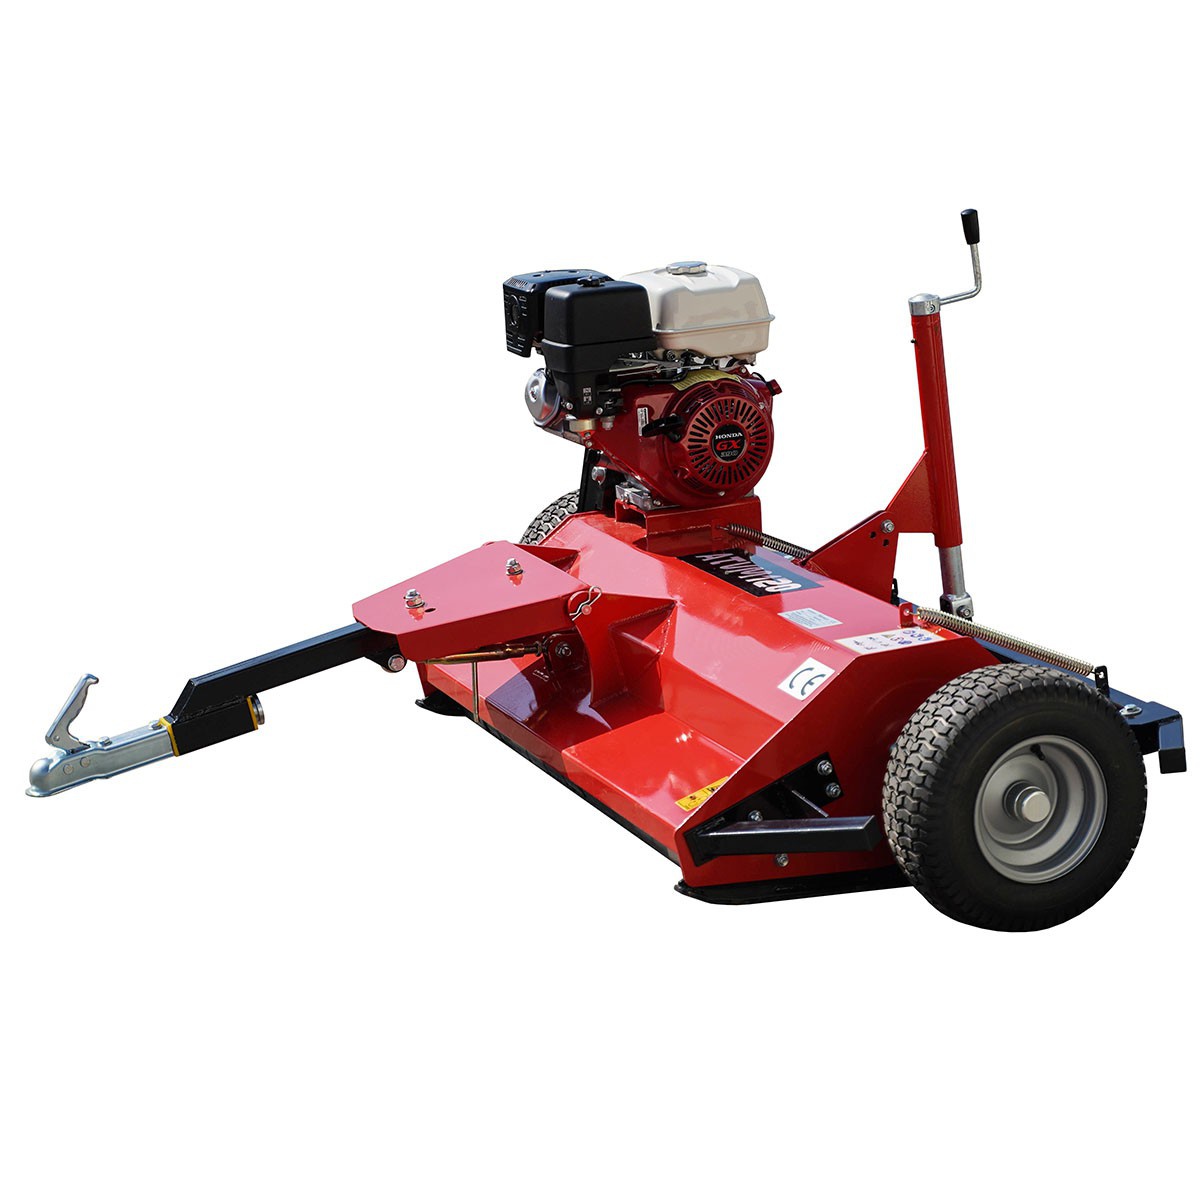 Petrol flail mower ATVM 120 for QUAD / HONDA GX390